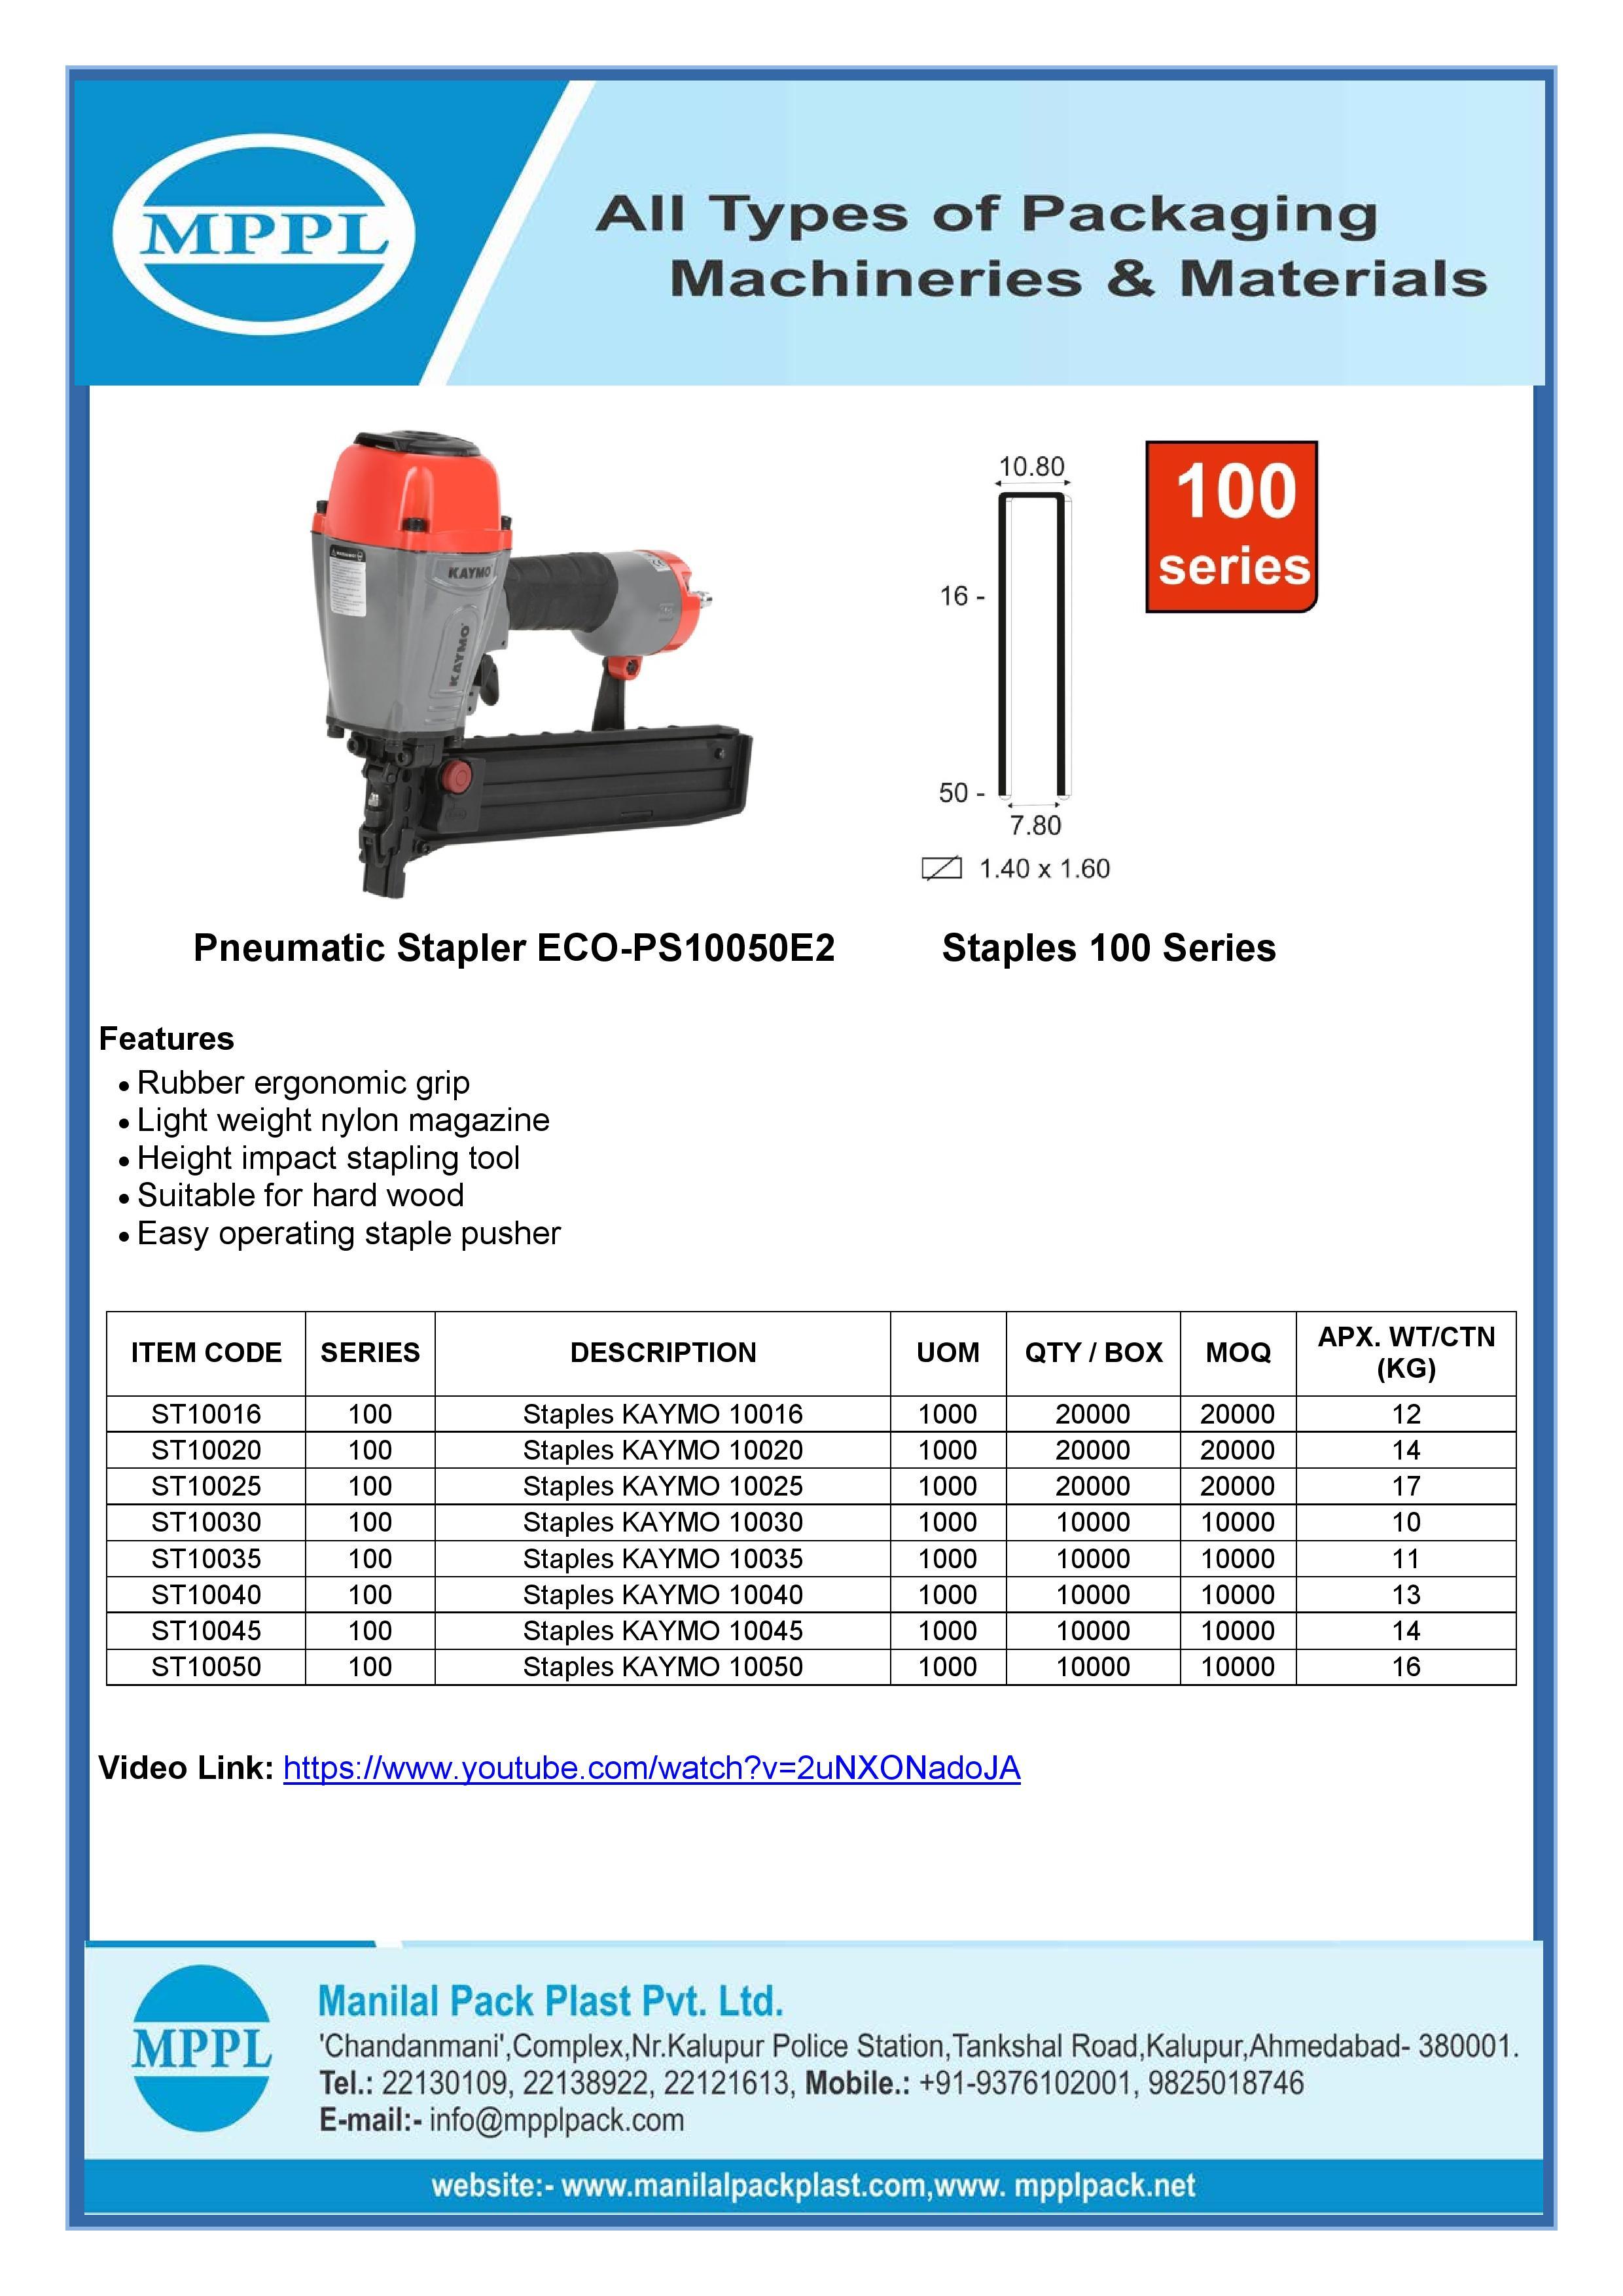 Pneumatic Stapler ECO-PS10050E2